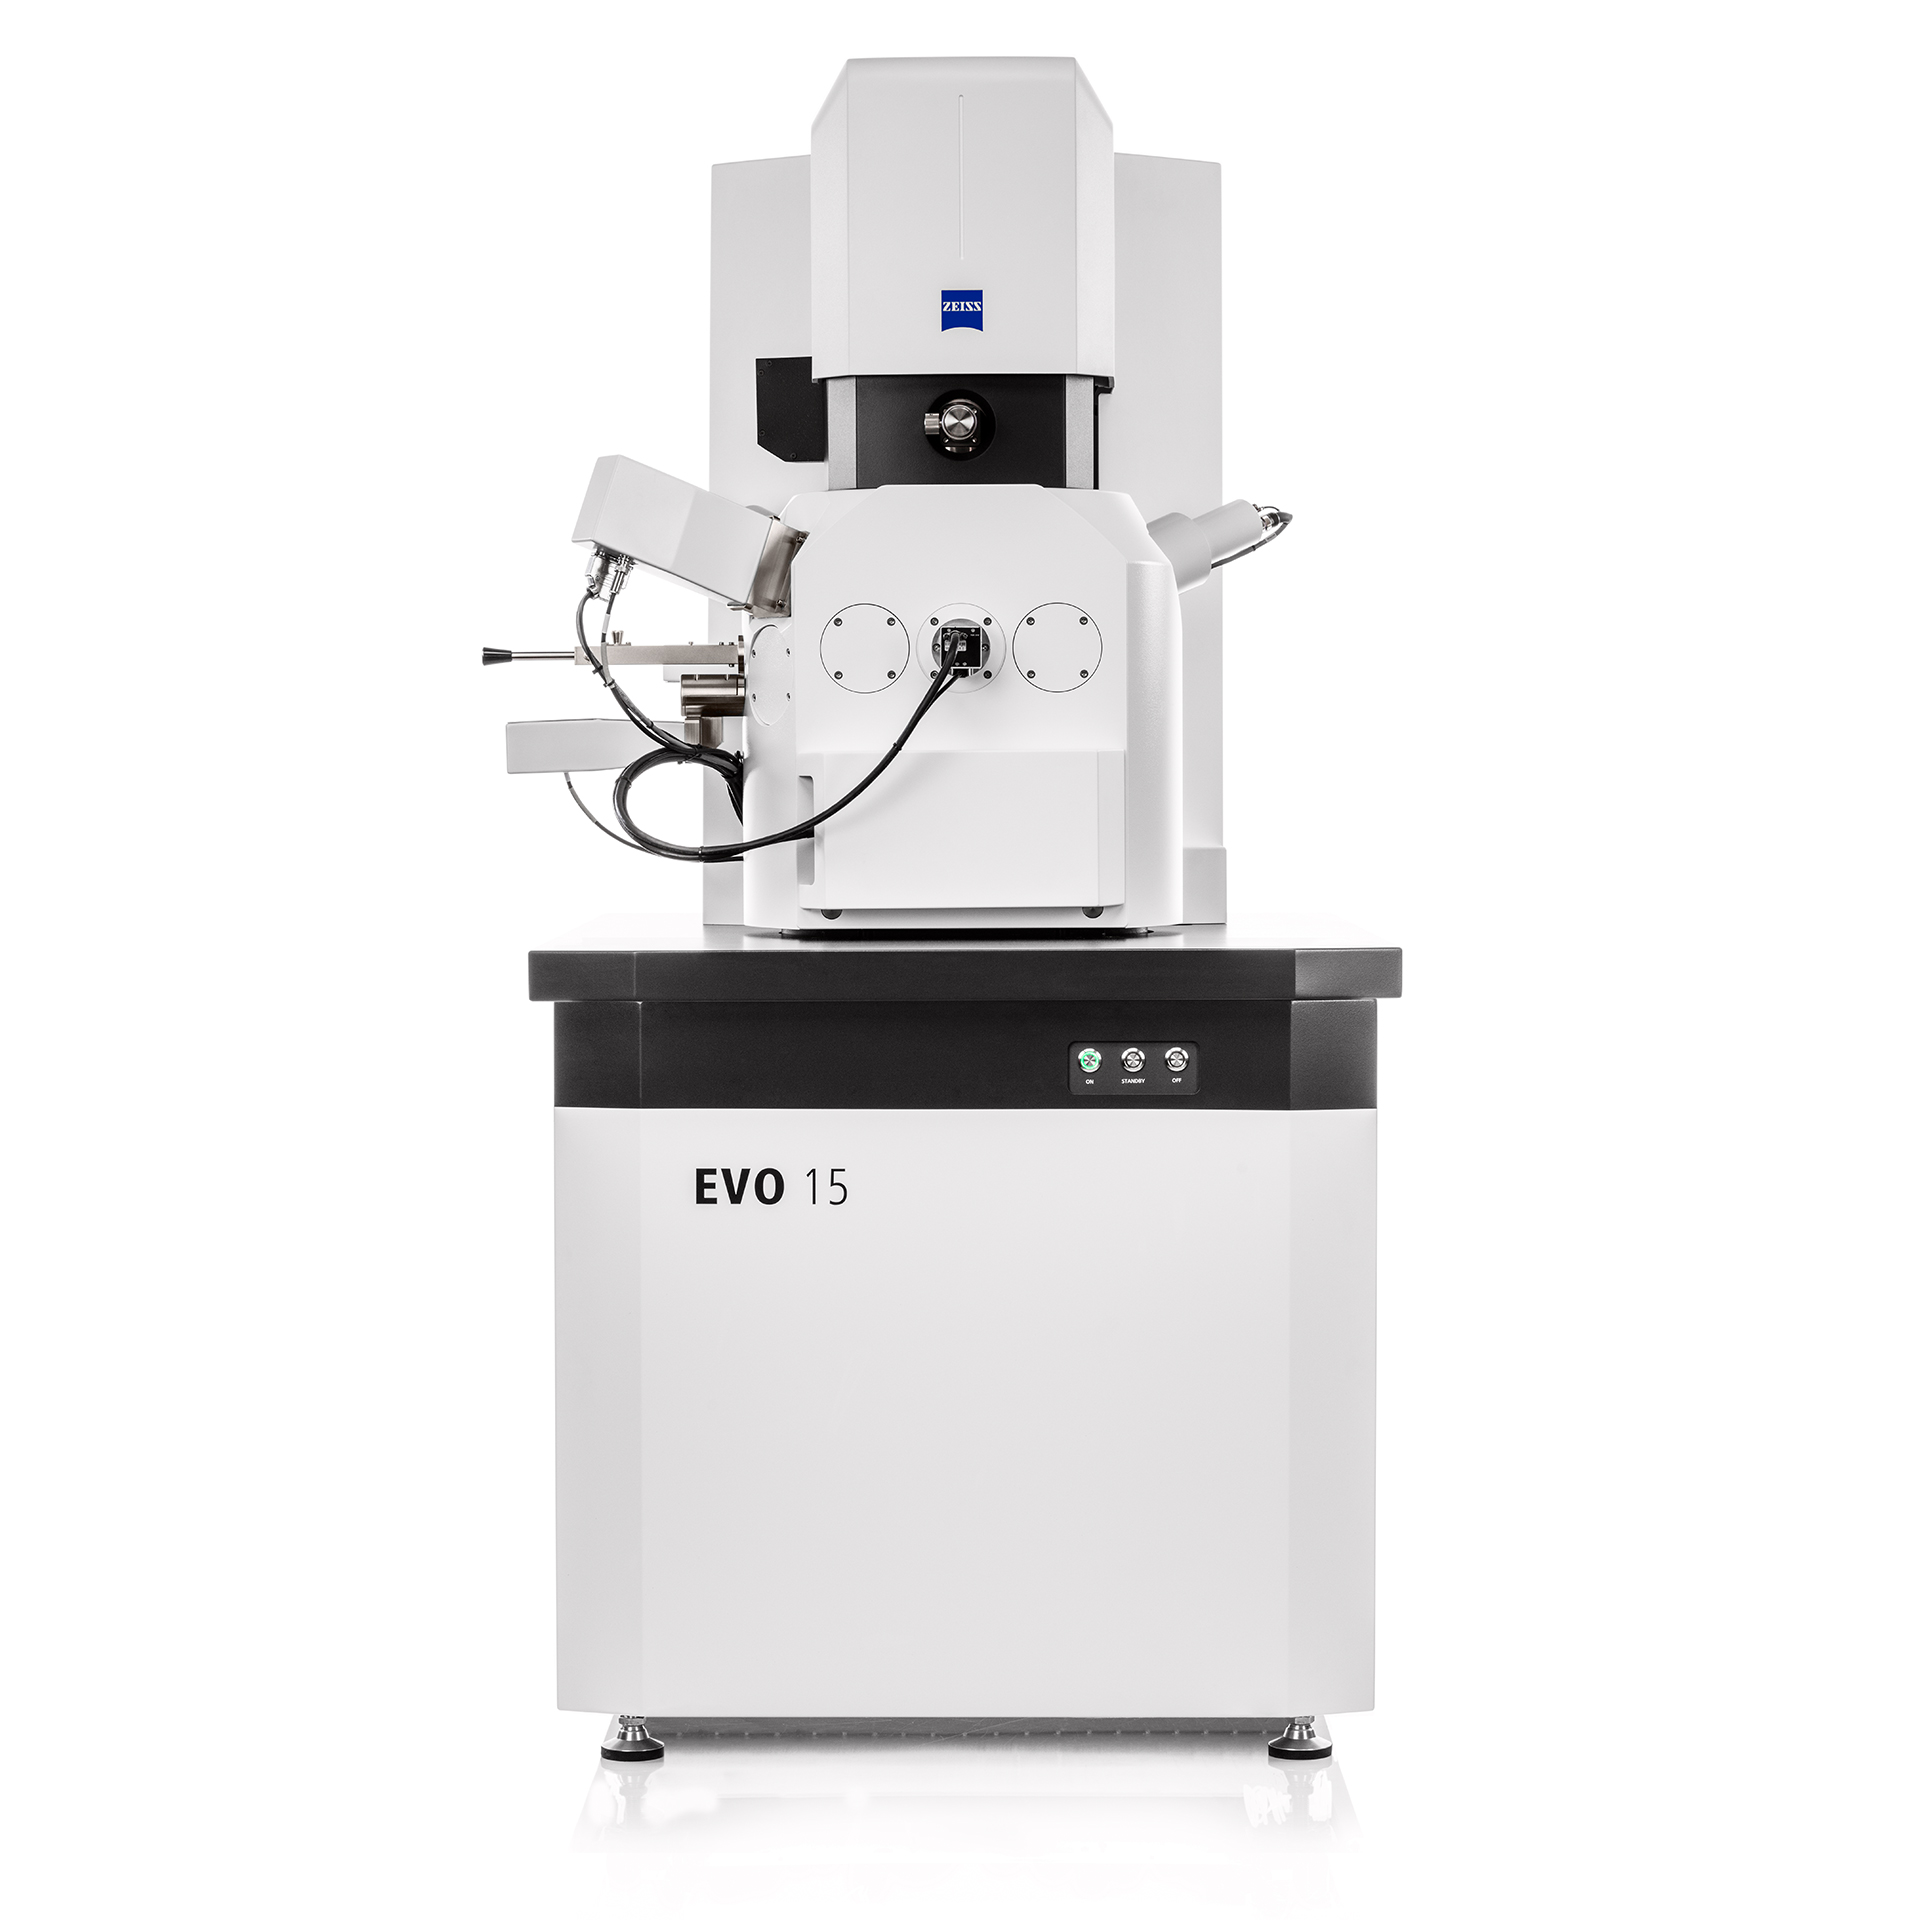 蔡司EVO——操作直观的模块化扫描电子显微镜平台，适用于日常检测与研究应用